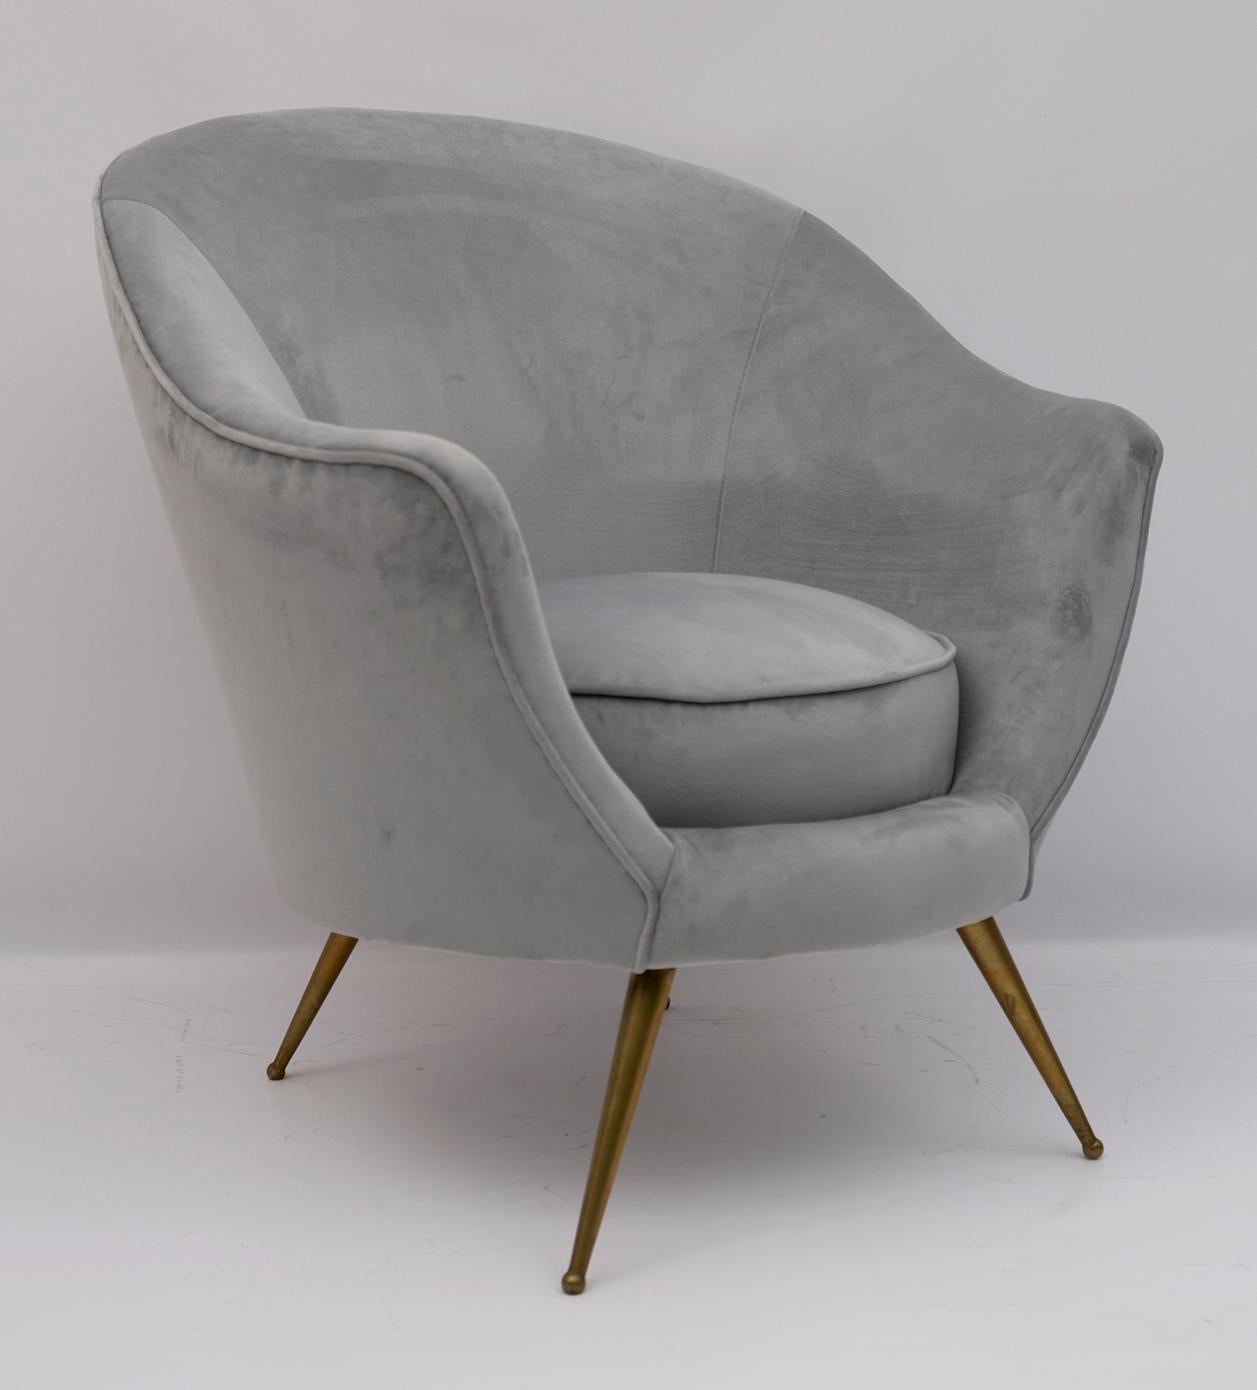 Schönes Paar Sessel, entworfen von Federico Munari in den frühen 1950er Jahren. Die Polsterung wurde mit Samt neu bezogen.

Der Preis bezieht sich auf den einzelnen Sessel.